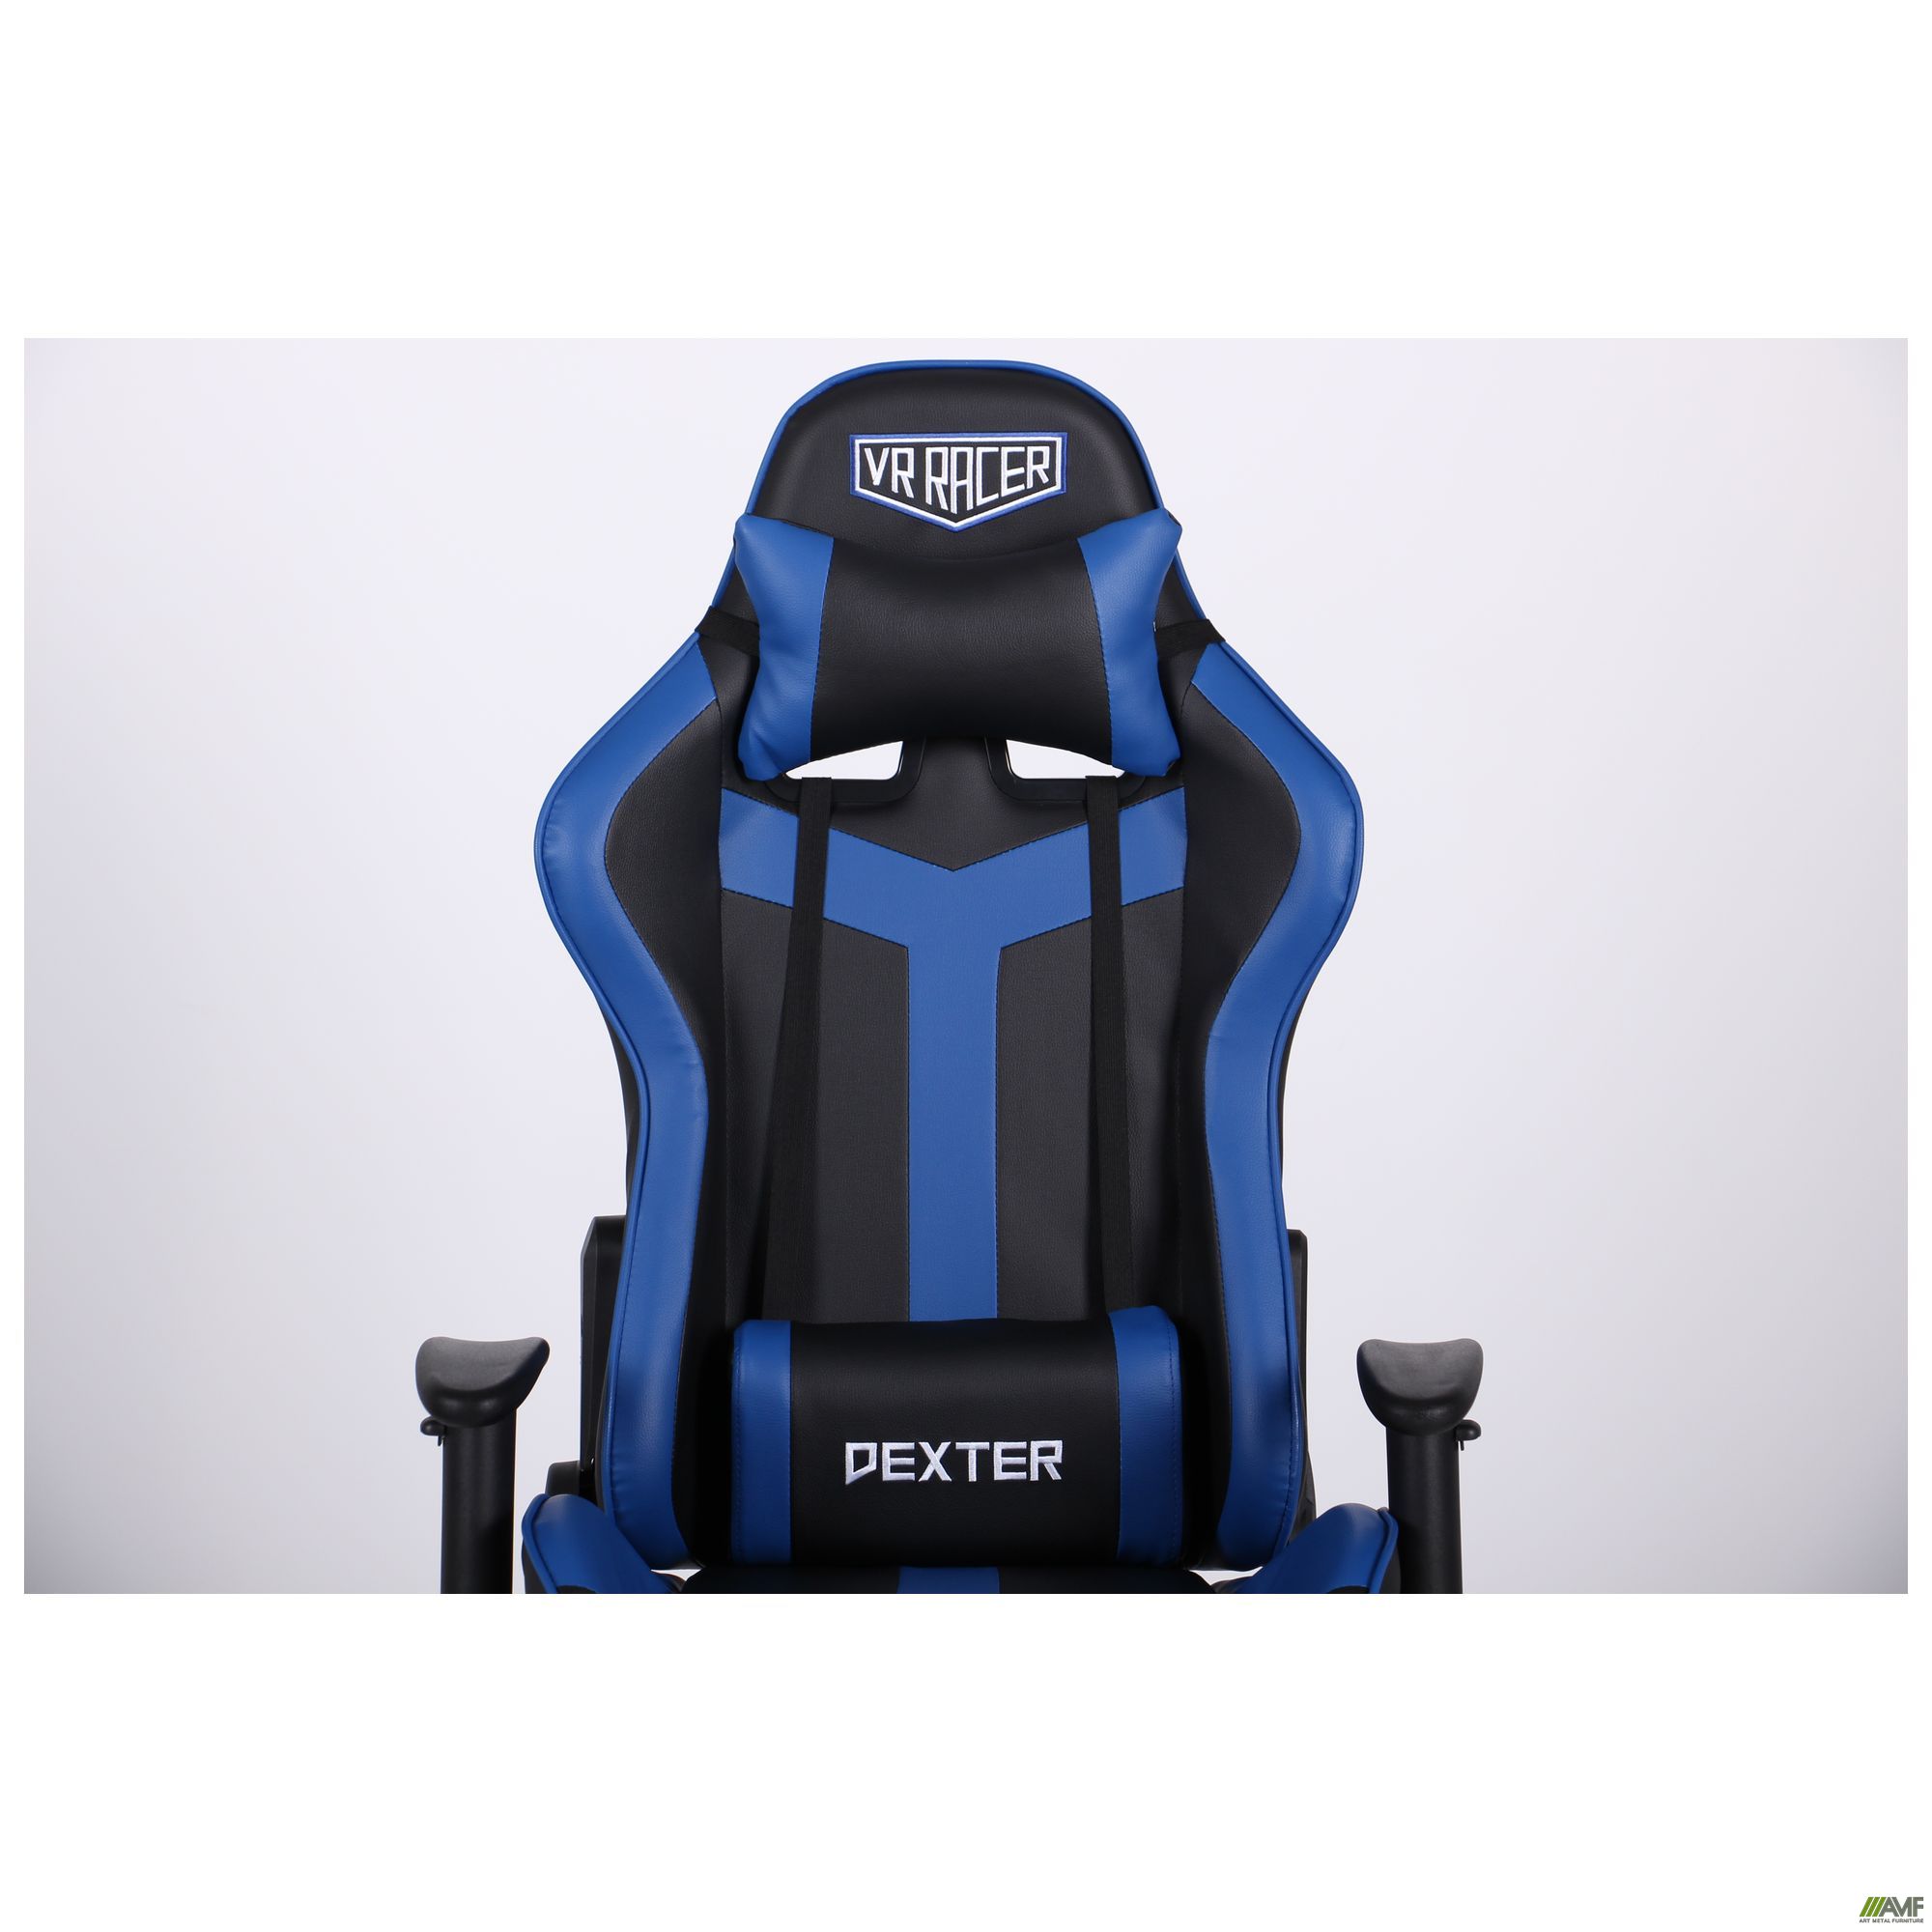 Фото 7 - Кресло VR Racer Dexter Slag черный/синий 